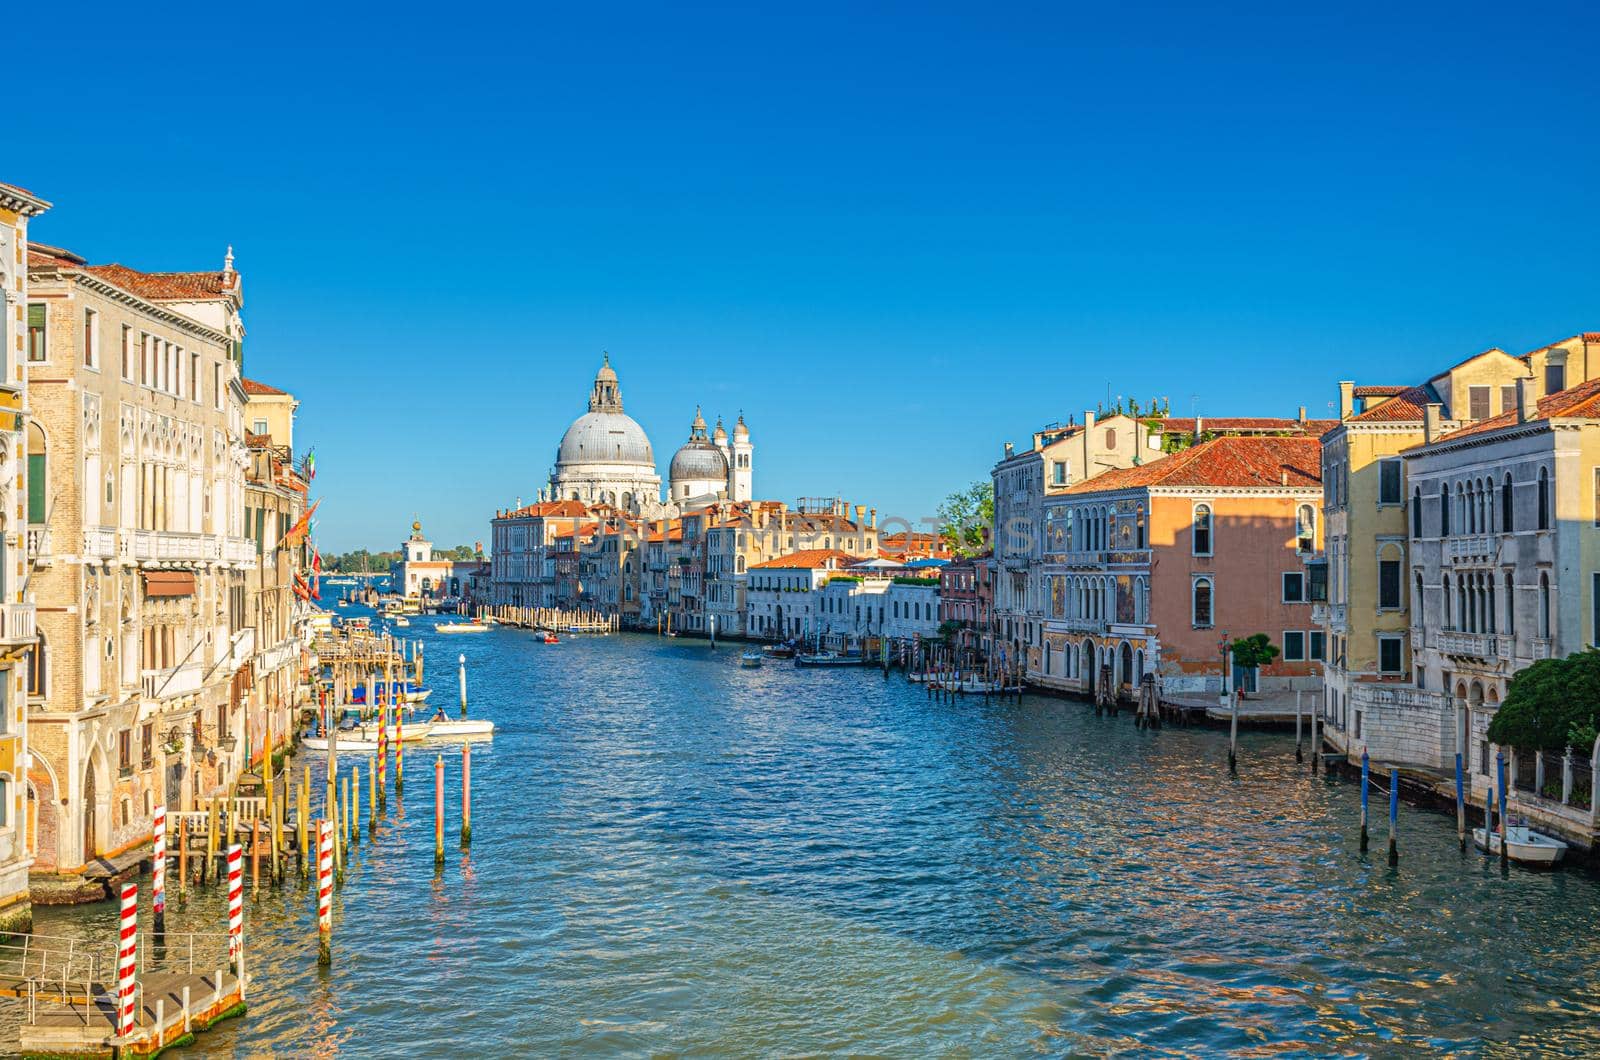 Venice cityscape with Grand Canal waterway Canal Grande in historical city centre. Santa Maria della Salute Roman Catholic church on Punta della Dogana, blue sky background. Veneto Region, Italy.